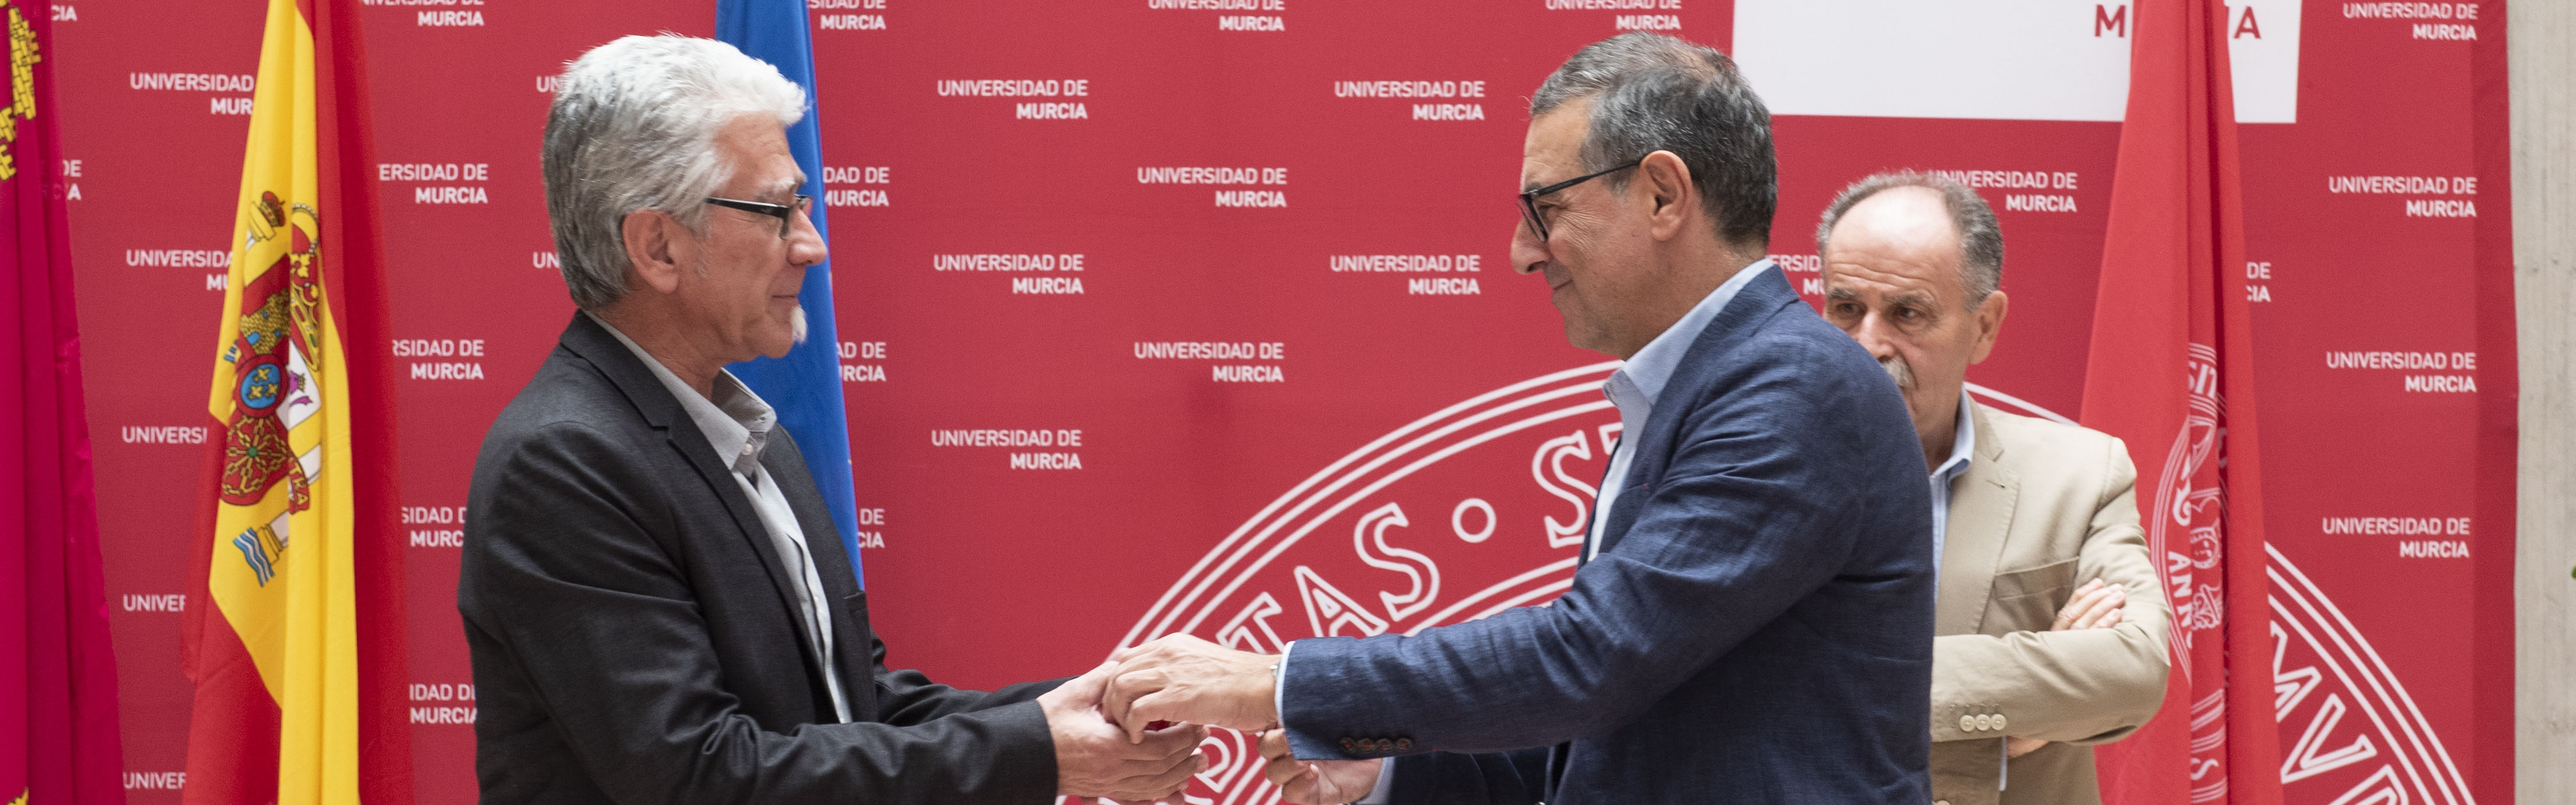 Nota de prensa - Juan José Vera toma posesión de su cargo como Defensor Universitario de la UMU para una segunda legislatura